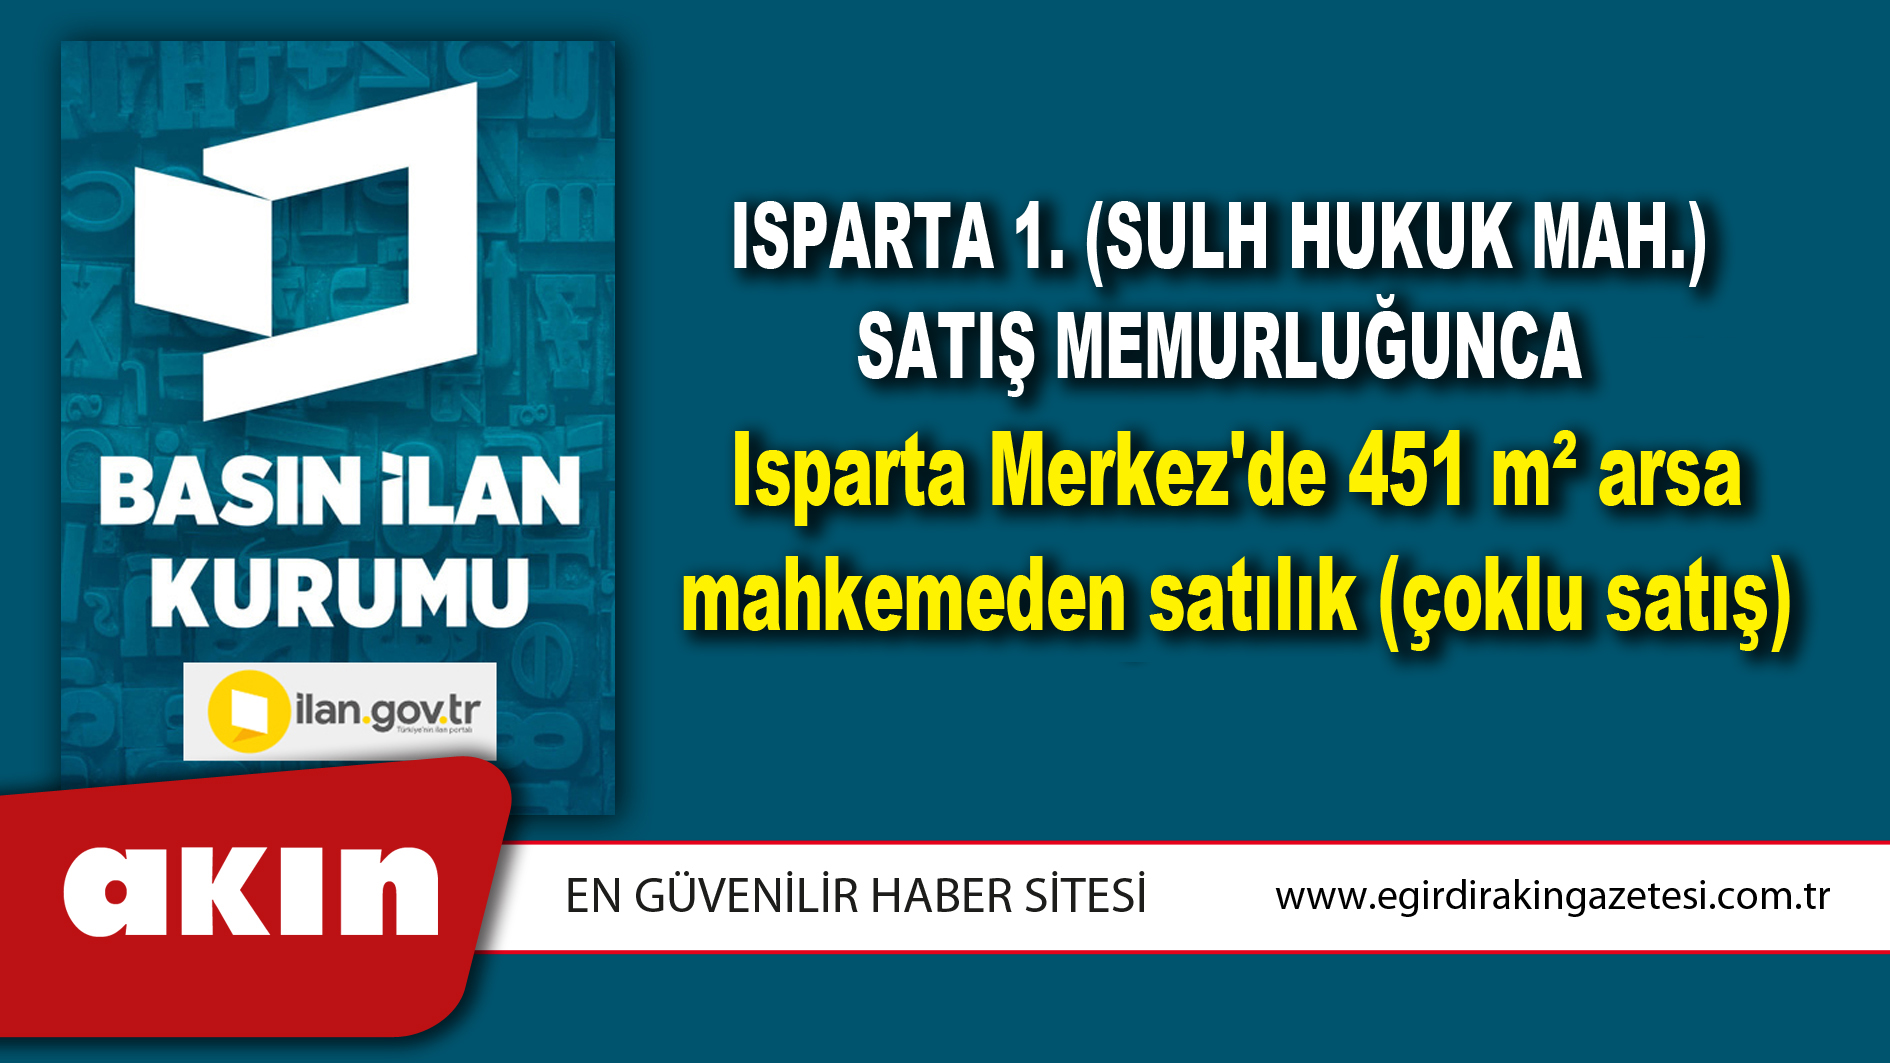 Isparta 1. (Sulh Hukuk Mah.) Satış Memurluğunca Isparta Merkez'de 451 m² arsa mahkemeden satılık (çoklu satış)